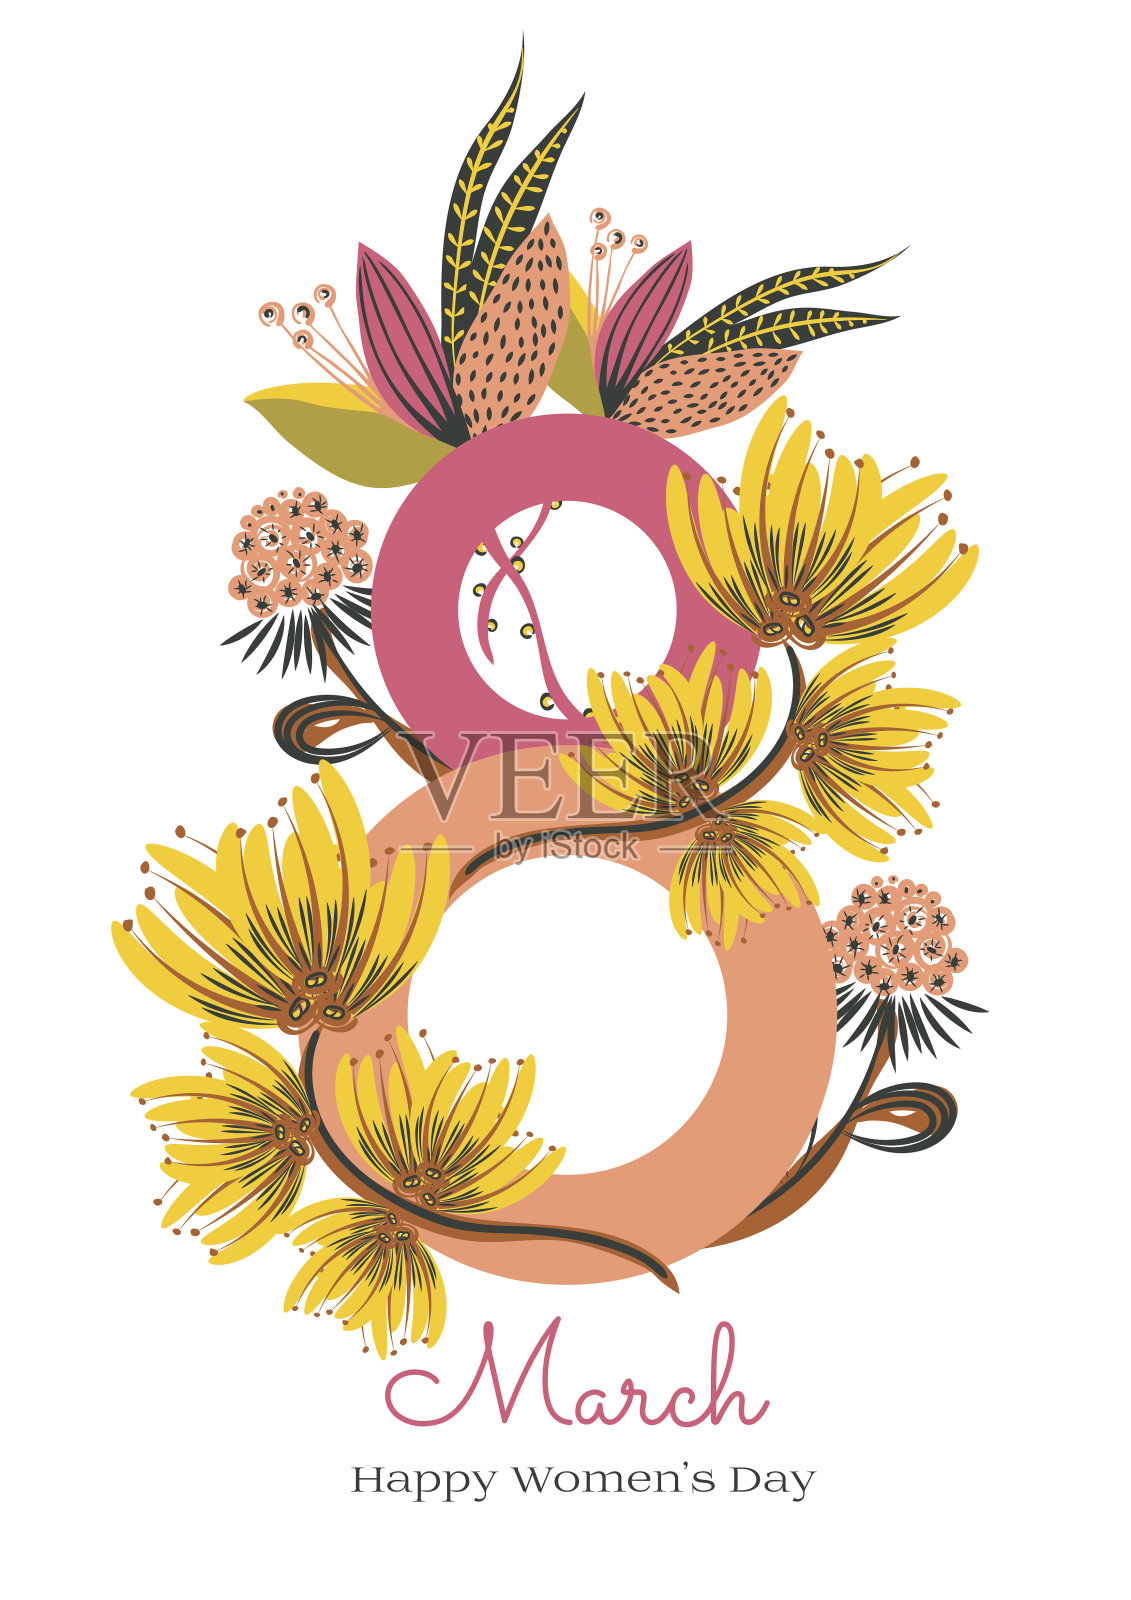 3月8日。妇女节快乐。数字8编织花。春天的节日。卡片设计与手绘花卉装饰插画图片素材